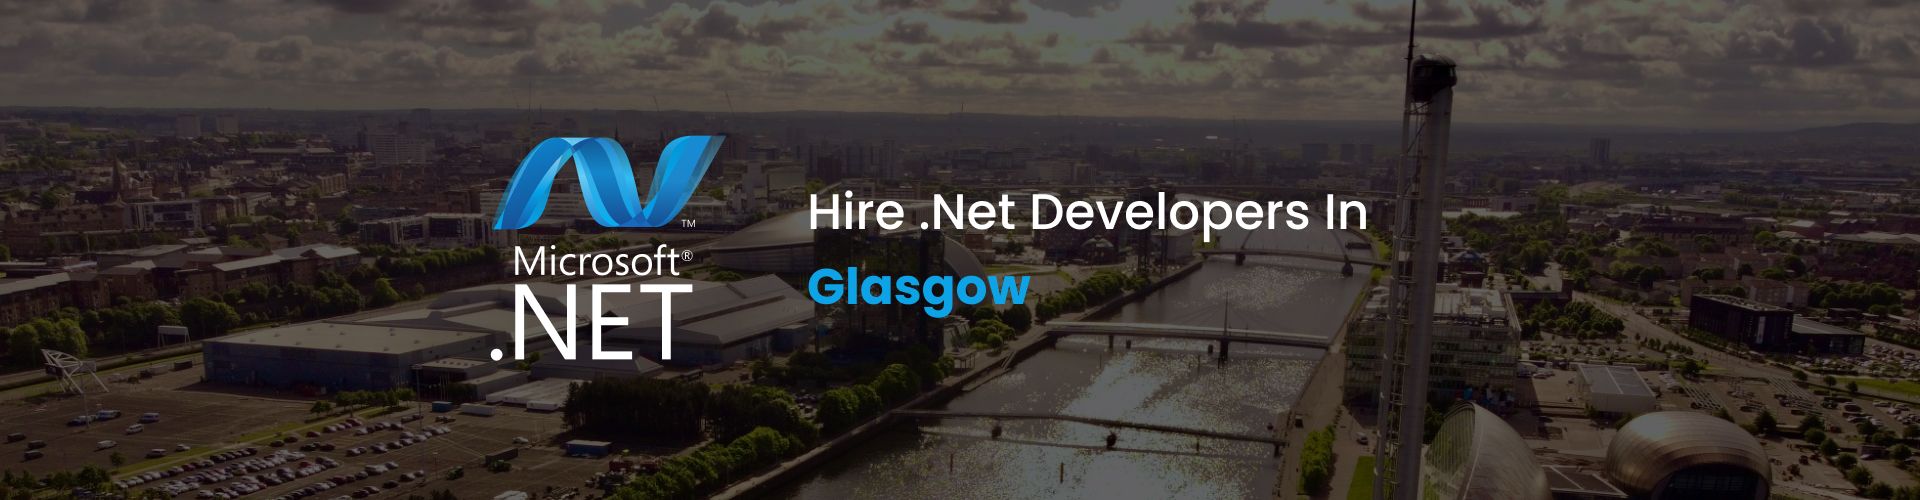 hire dot net developers in glasgow